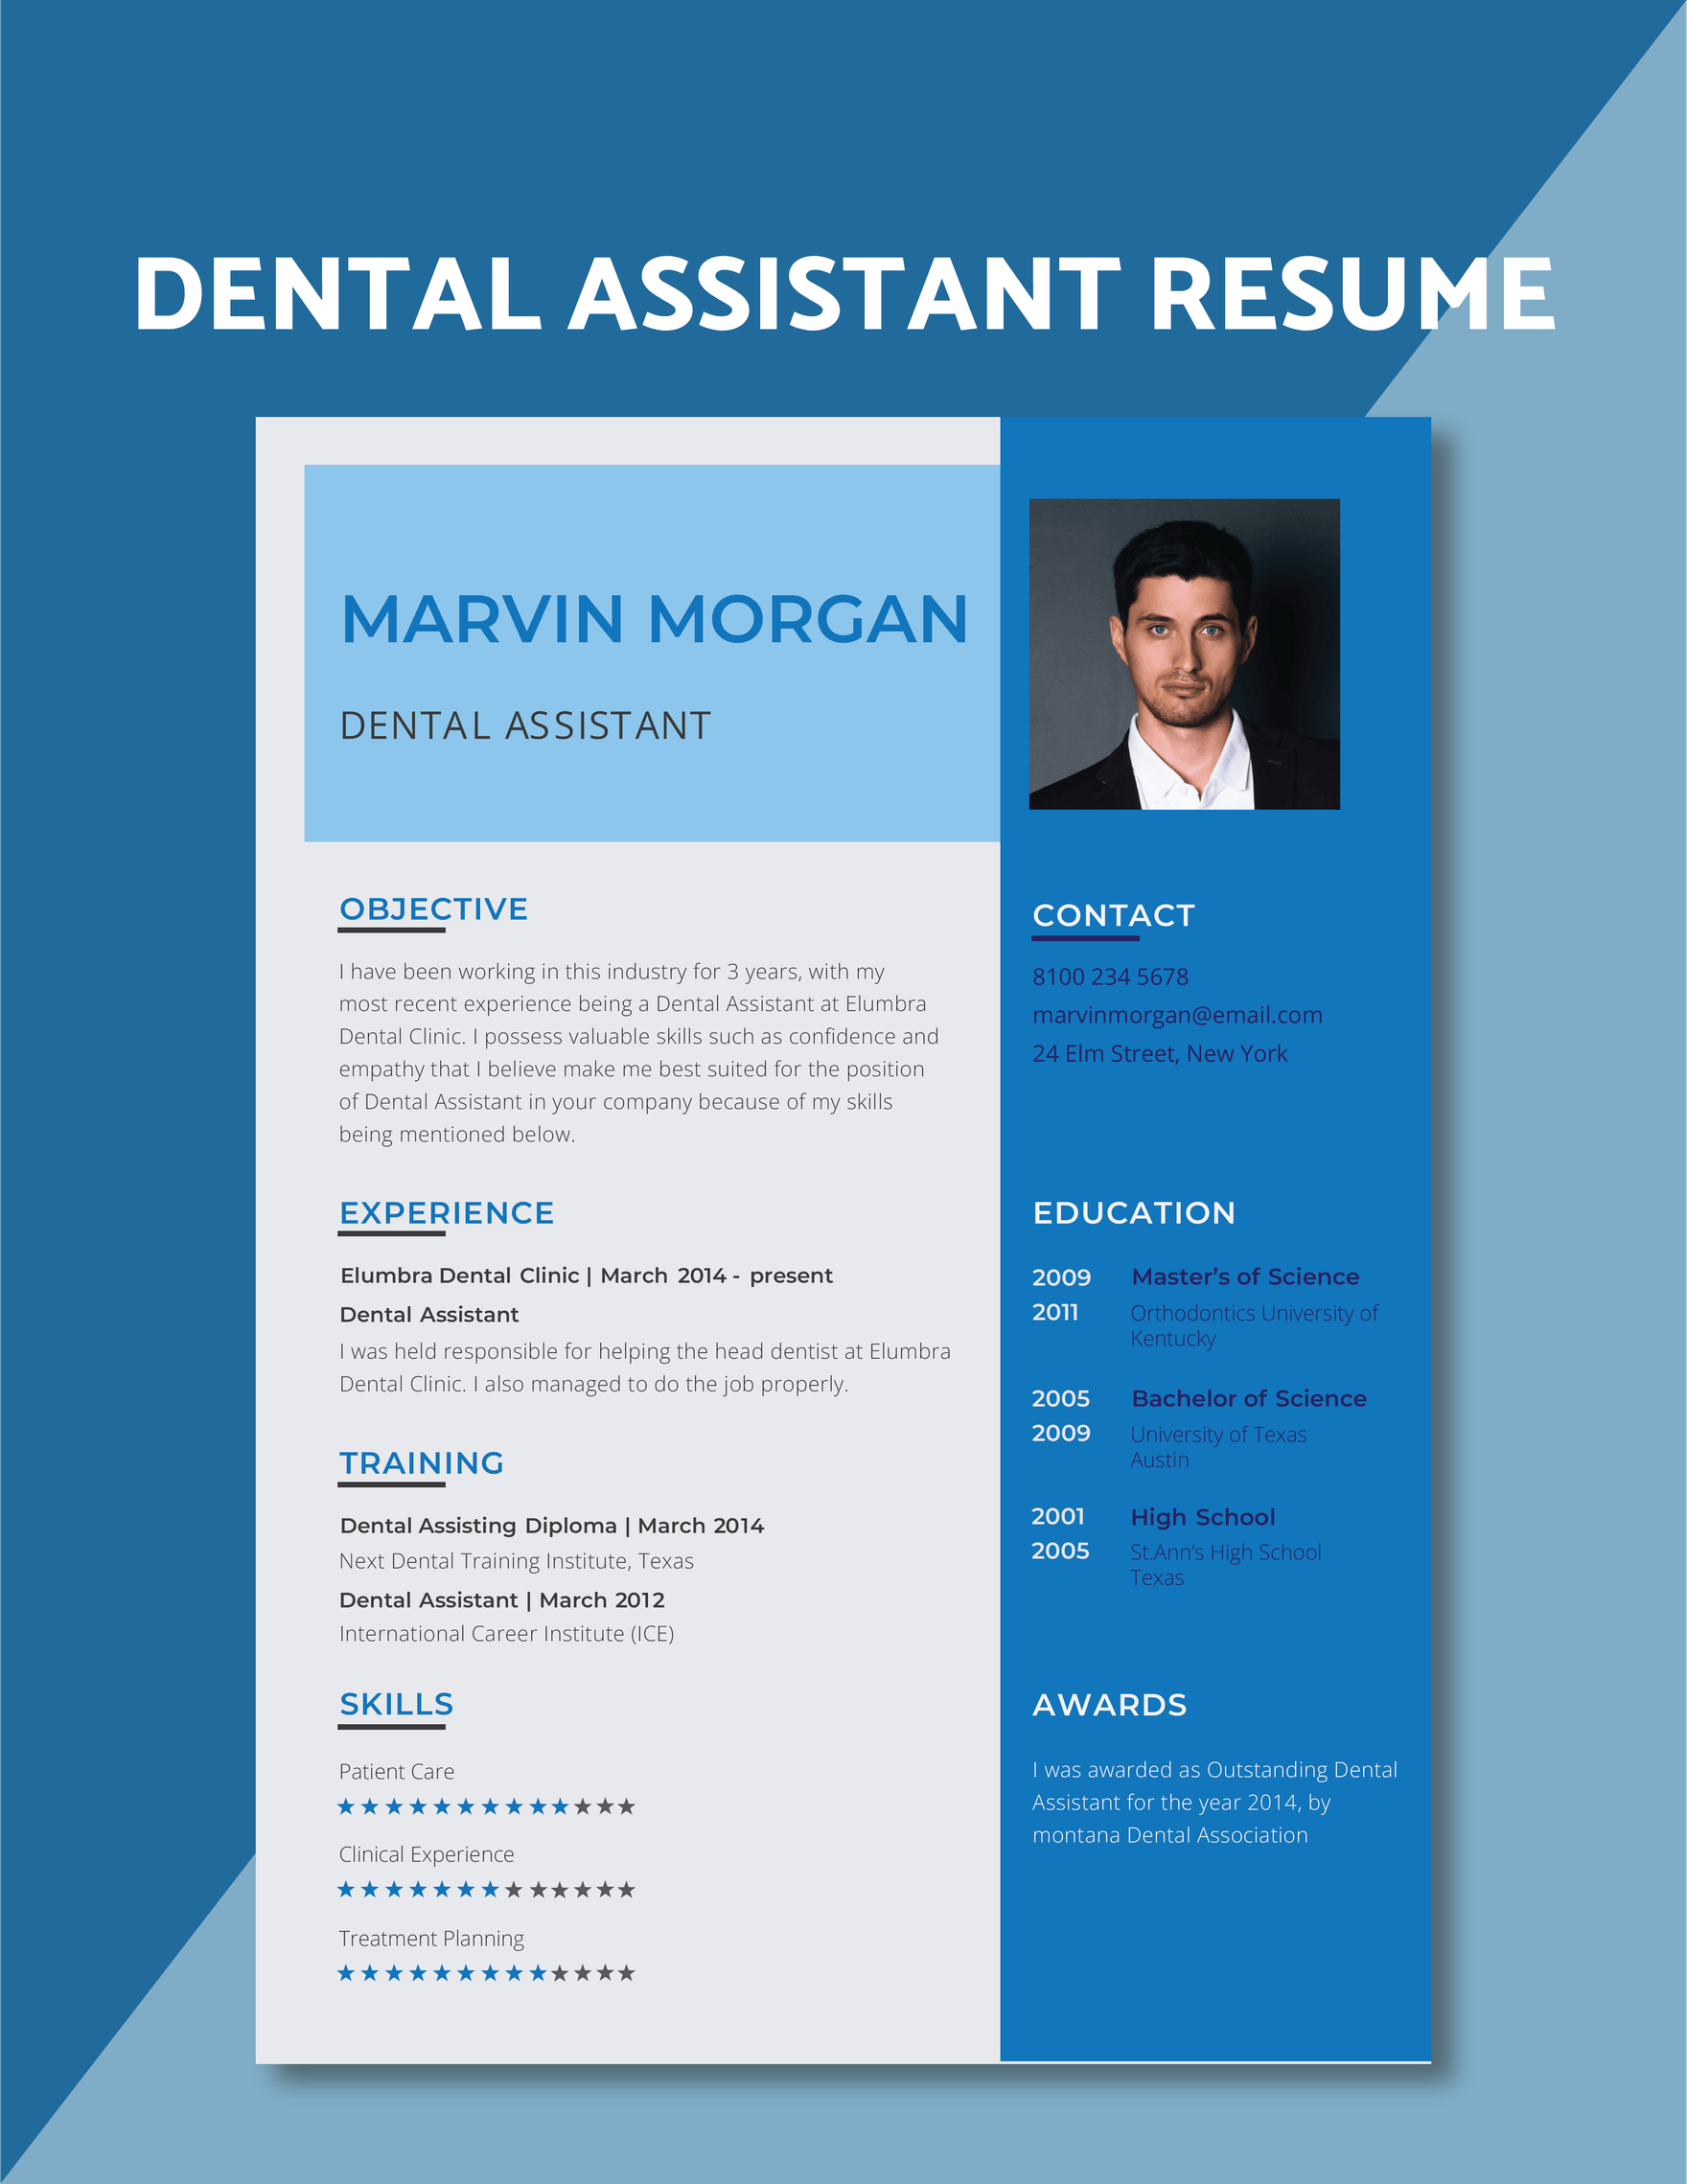 Dental Assistant Resume